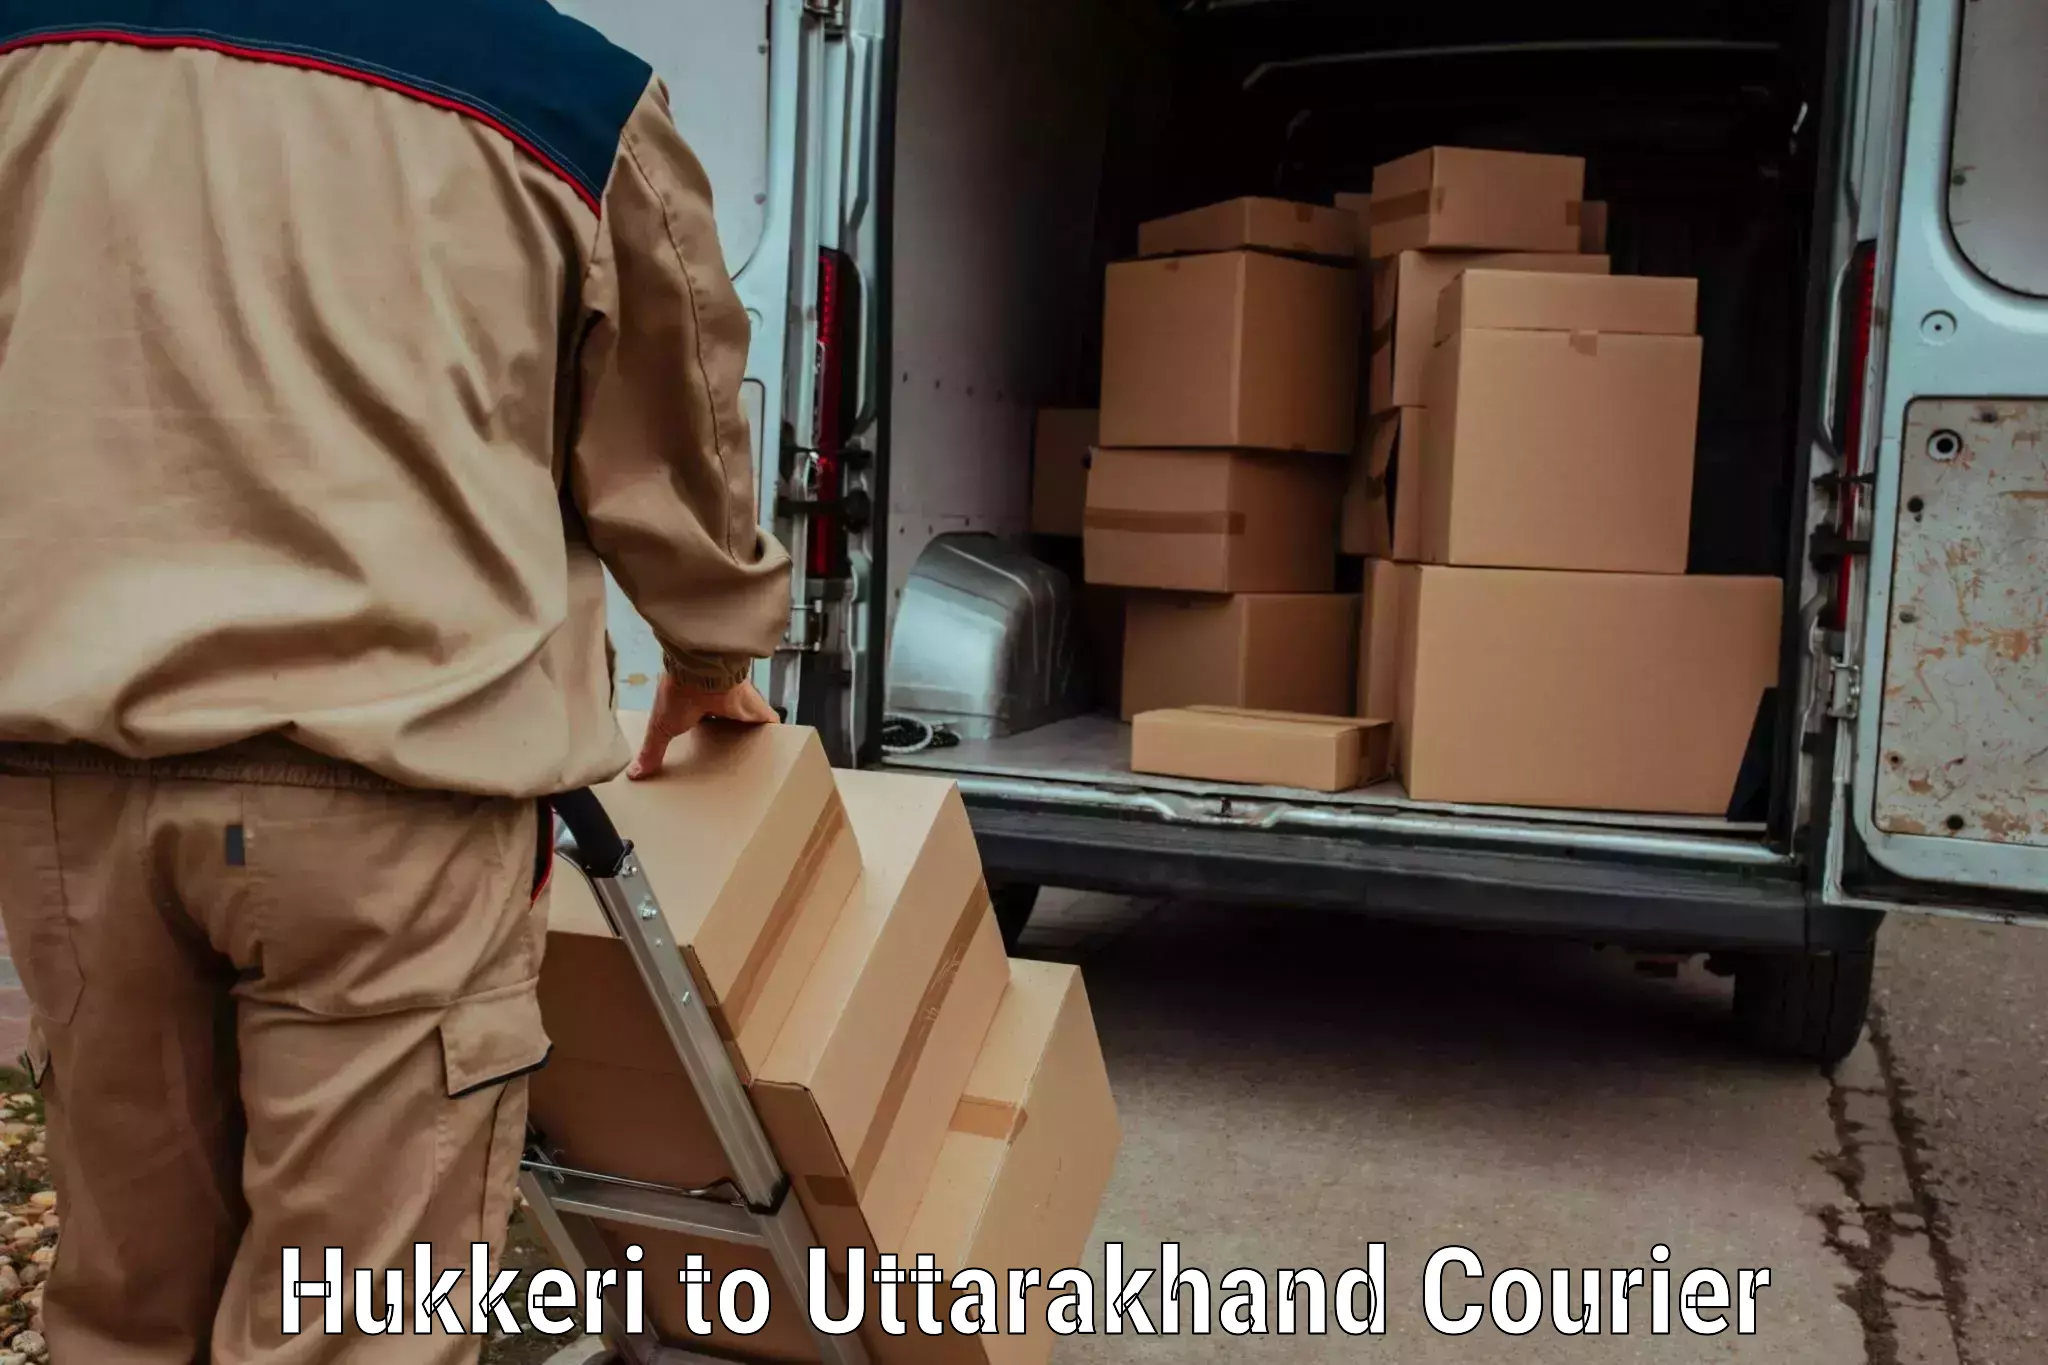 Luggage transport consulting Hukkeri to Uttarakhand